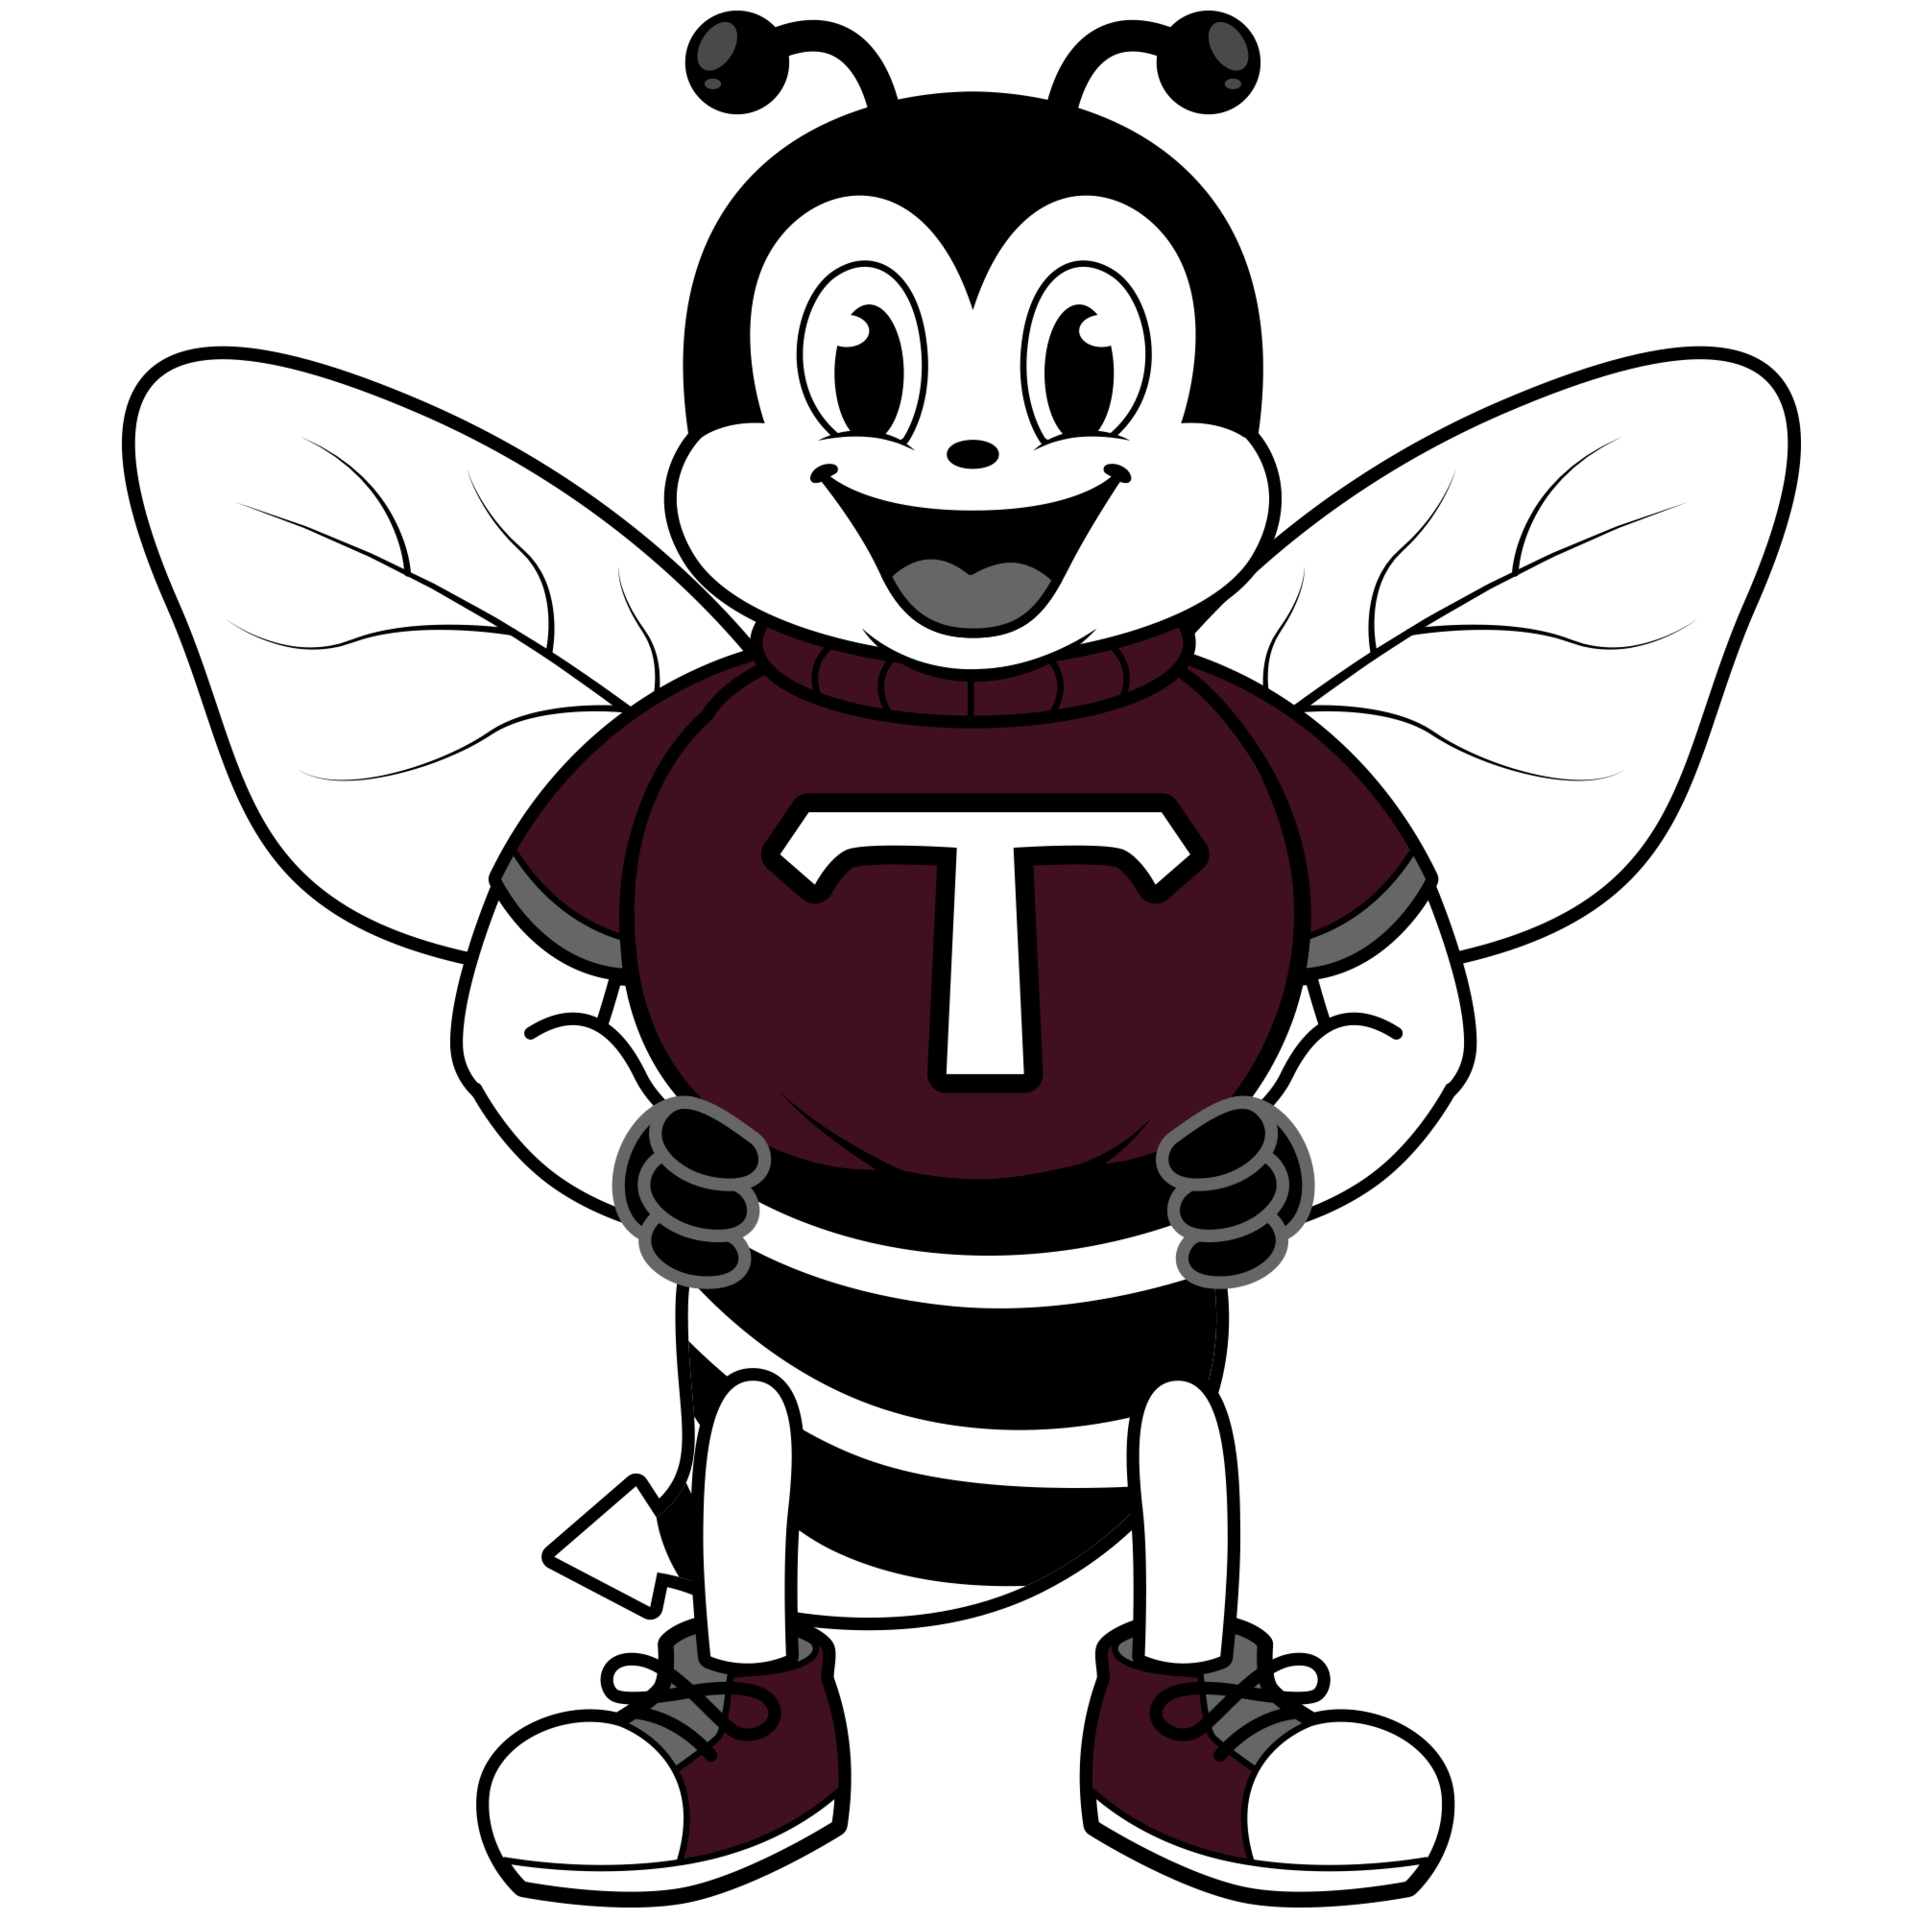 Elementary mascot Bee